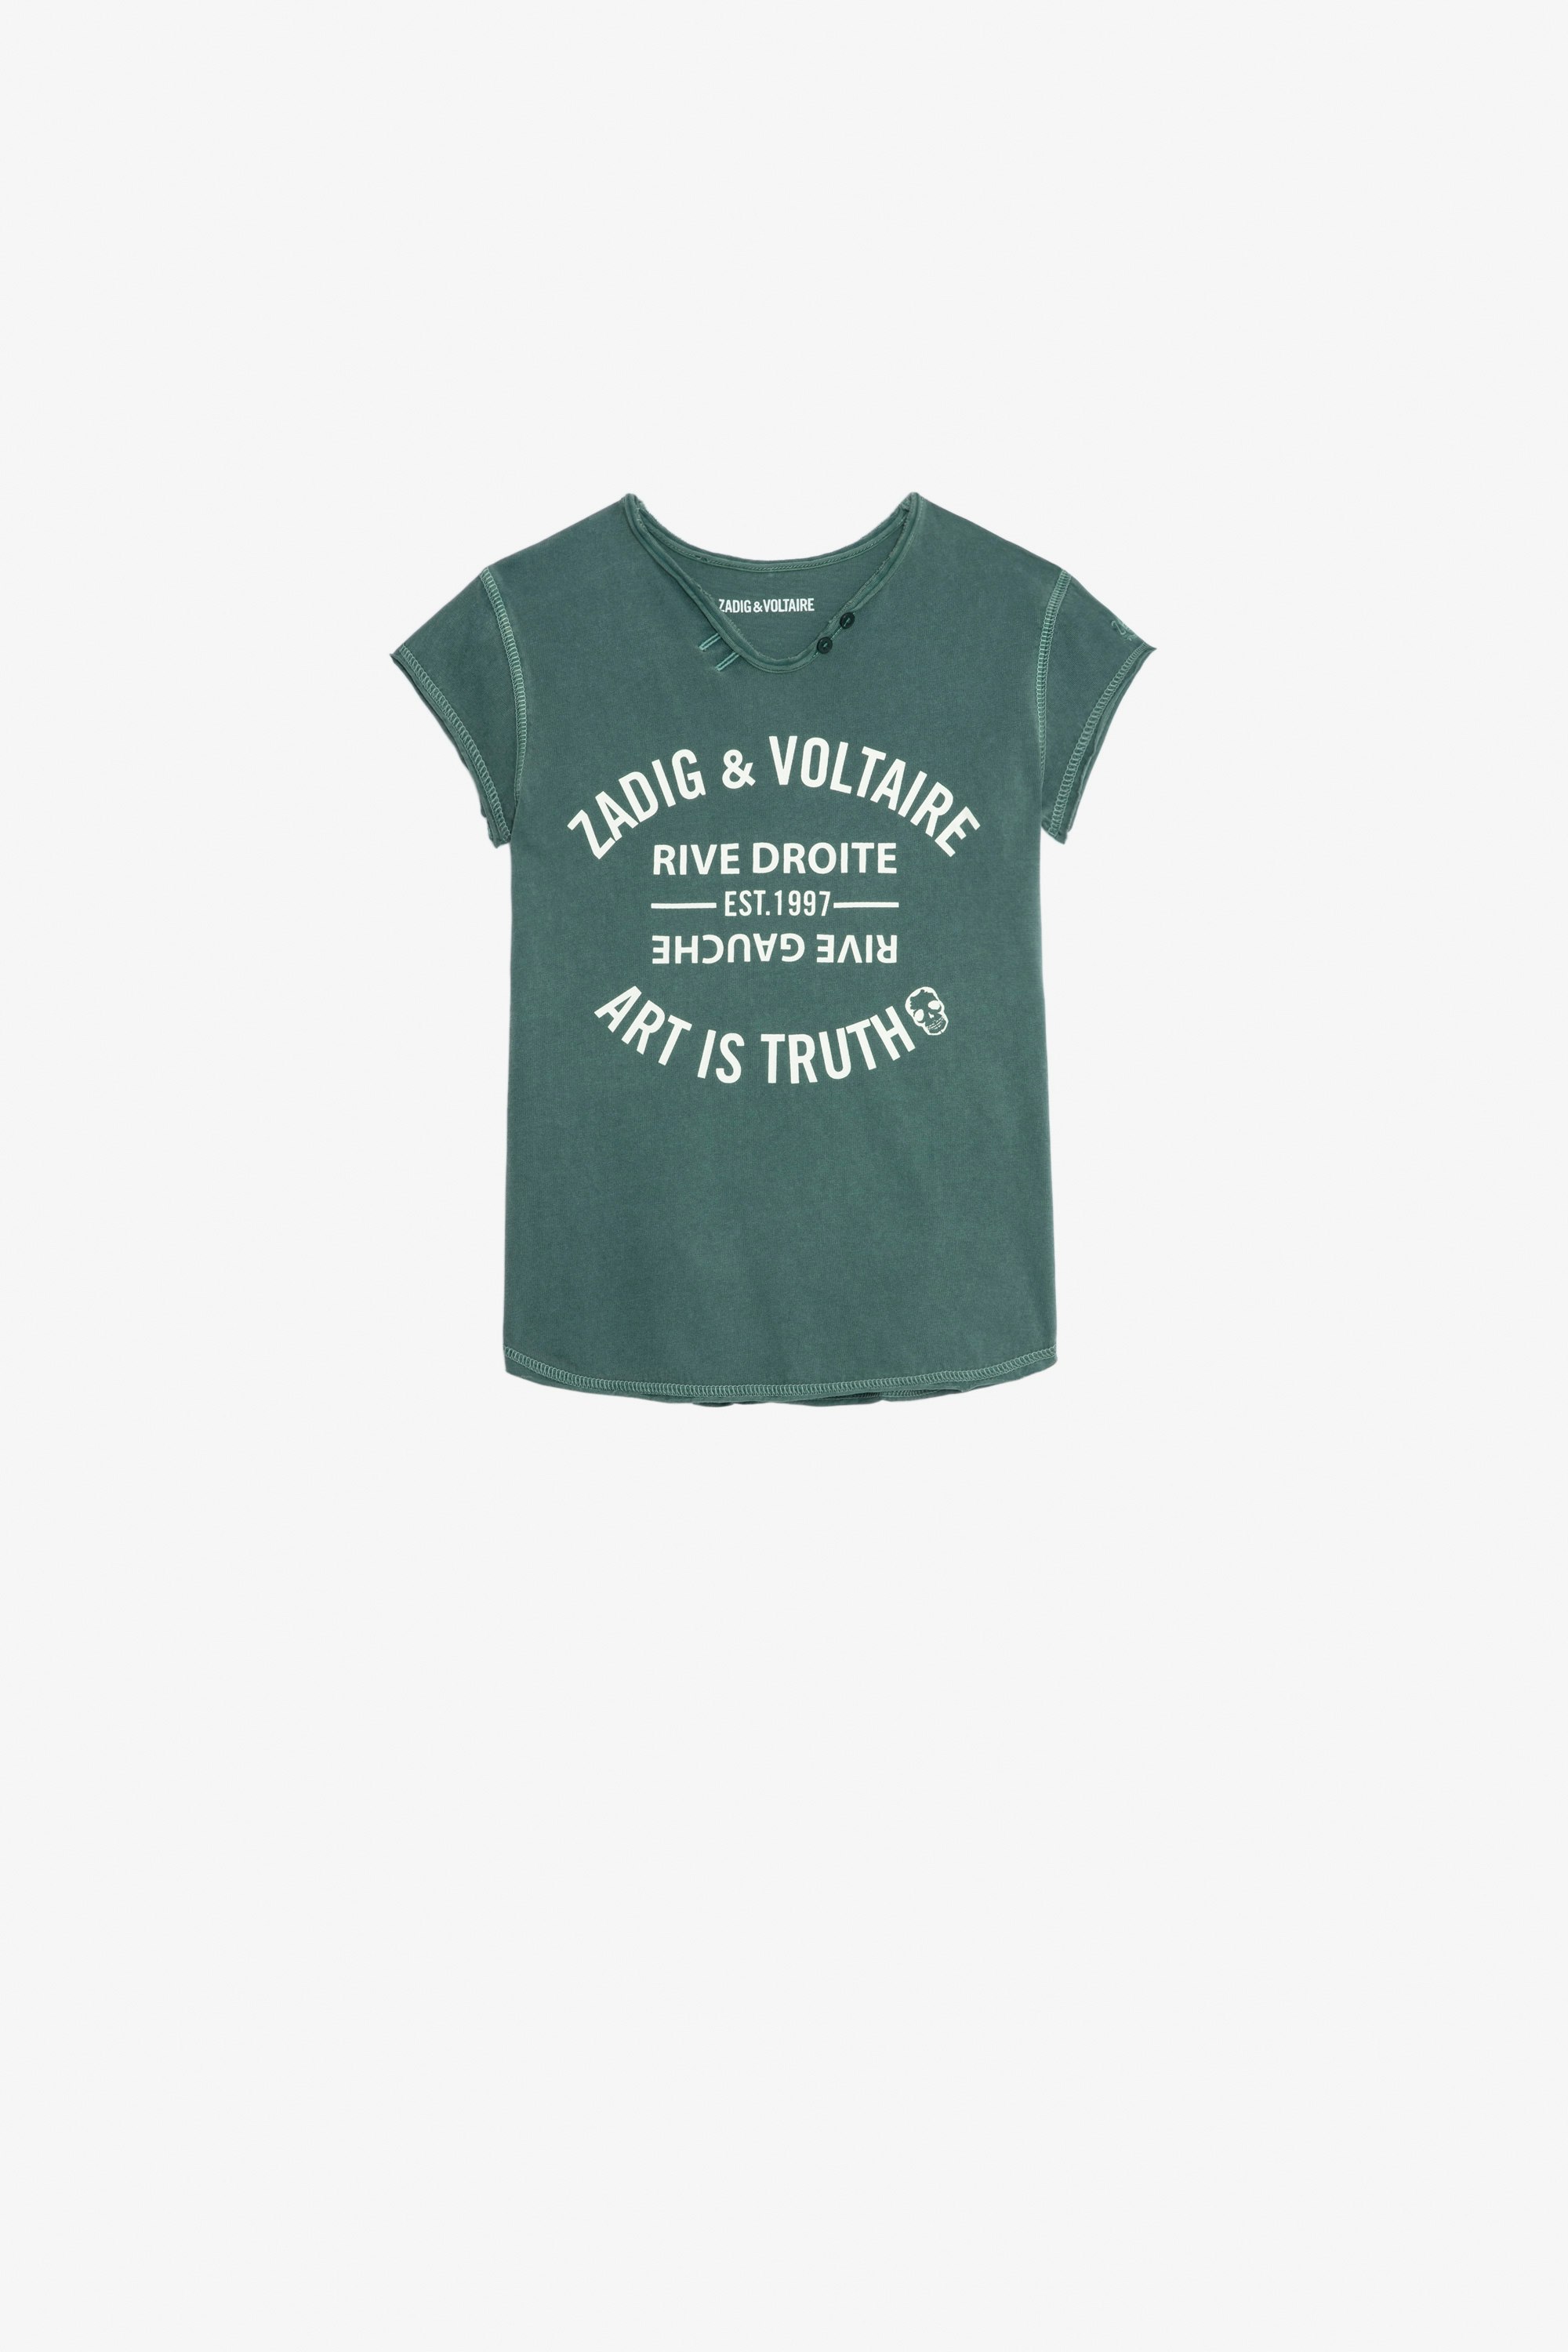 Camiseta Boxo Niña - Camiseta verde oscuro de punto de algodón de manga corta estampado de escudo y bordado para niña.